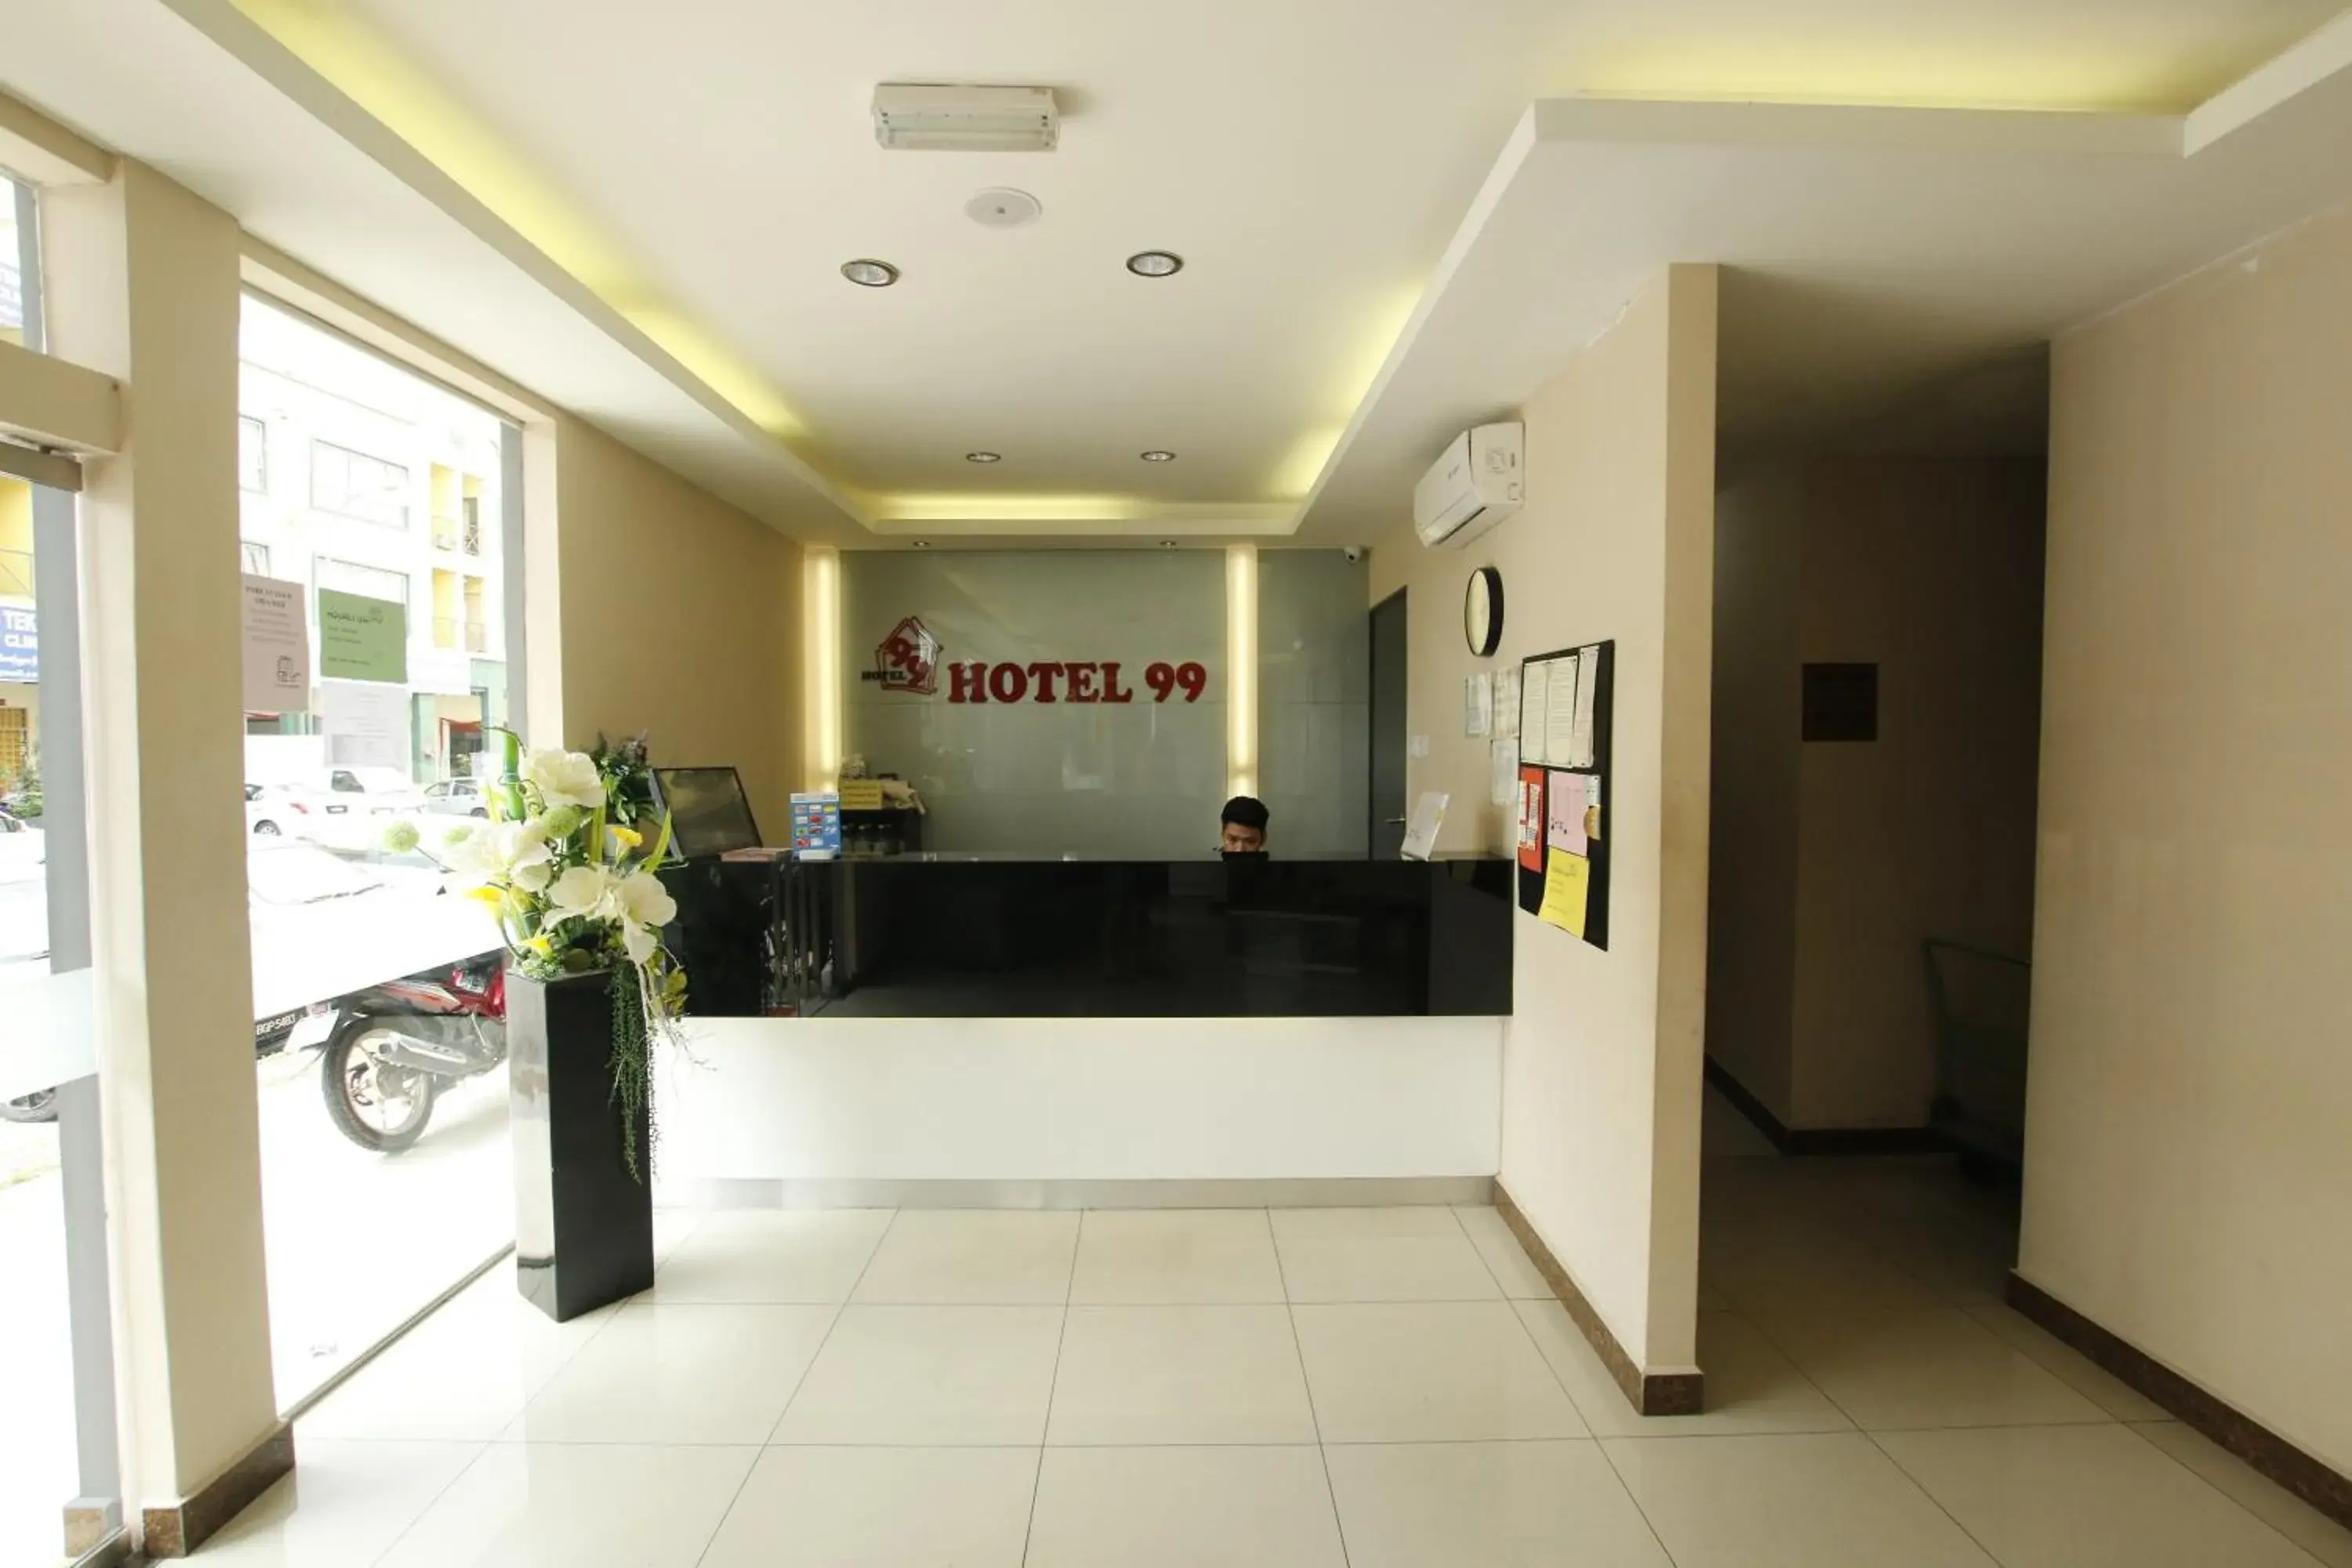 Lobby or reception, Lobby/Reception in Hotel 99 Bandar Klang (Meru)